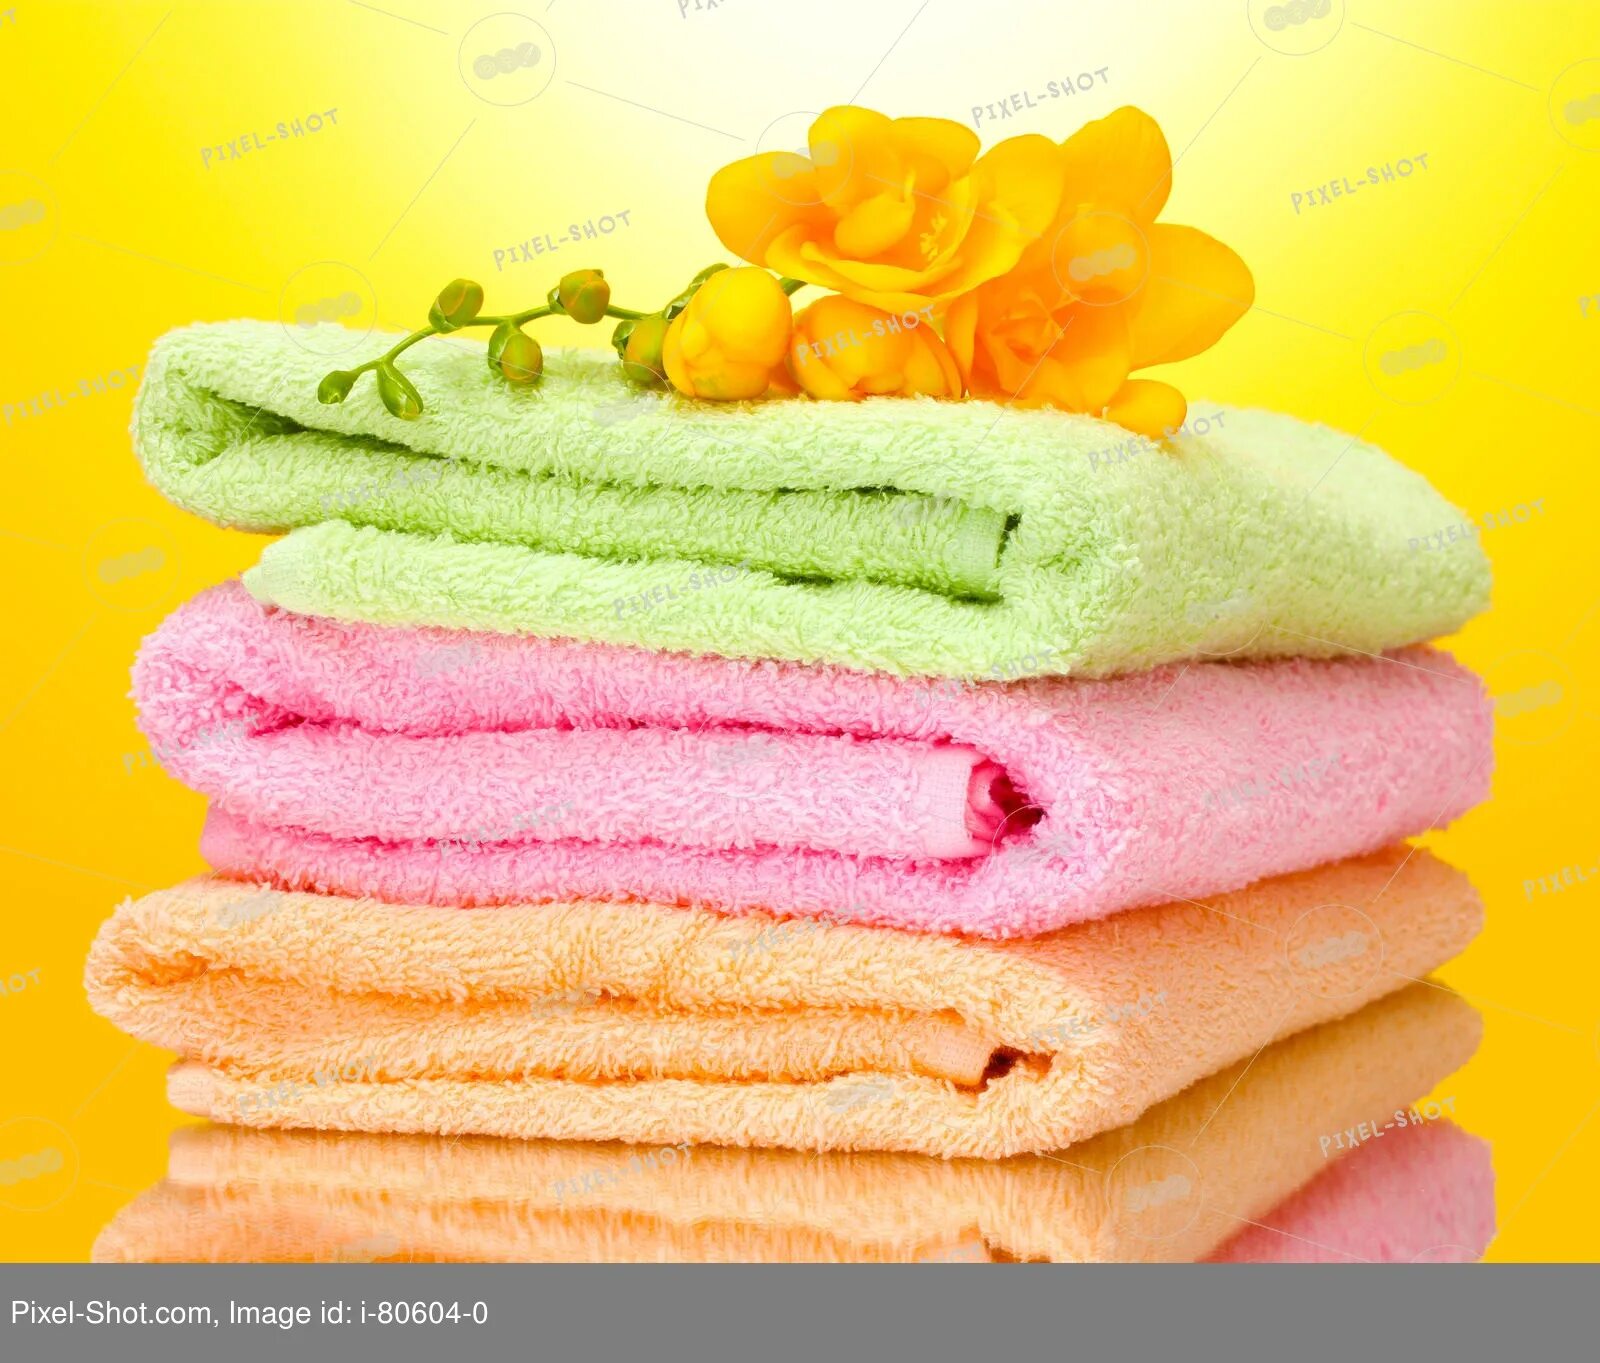 Полотенца. Махровые изделия. Халаты и полотенца из махры. Махровые полотенца желтого цвета. Полотенце моющие средства